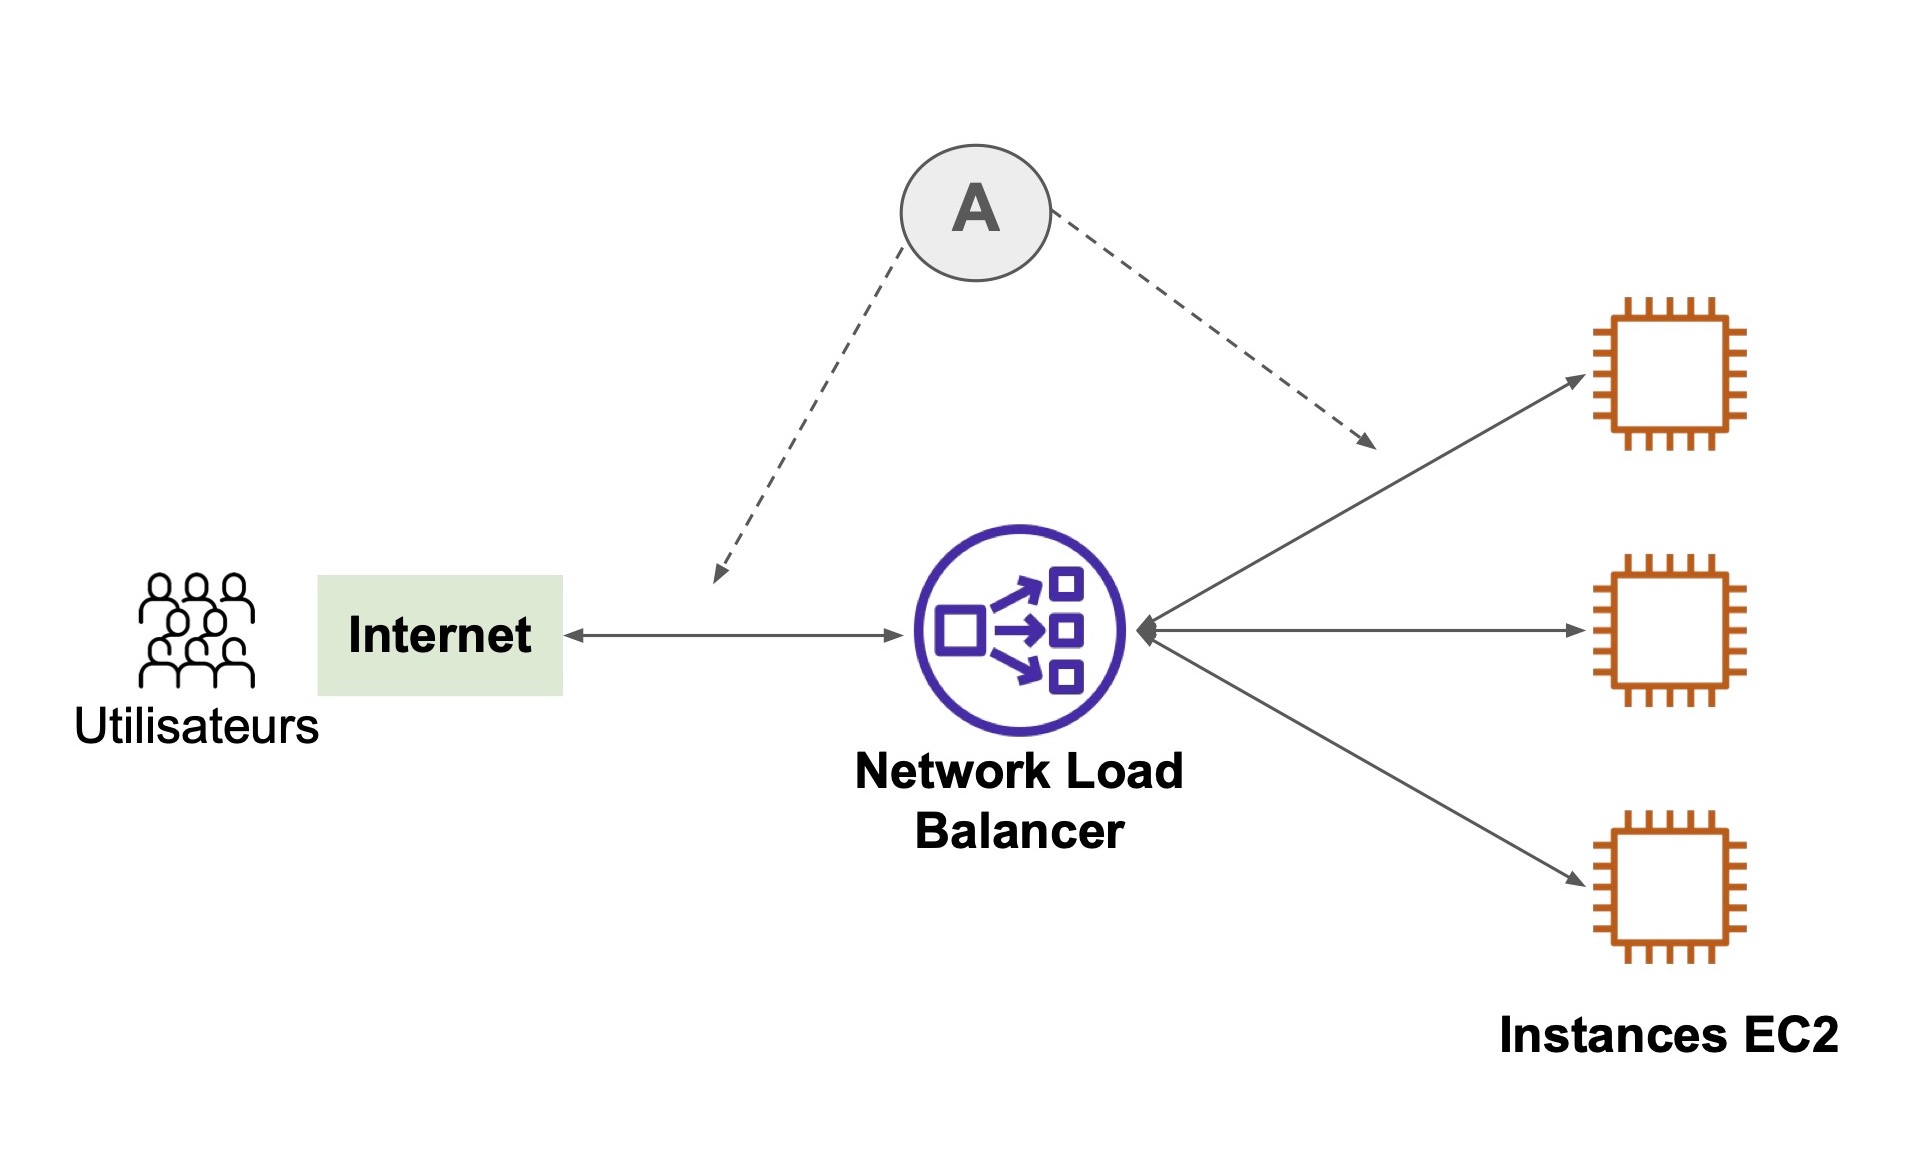 Schéma de fonctionnement d'un Network Load Balancer : - À gauche, internet / les utilisateurs  - Au milieu : Network Load Balancer  - À droite, instances EC2. Les 3 éléments sont reliés par des flèches horizontales.